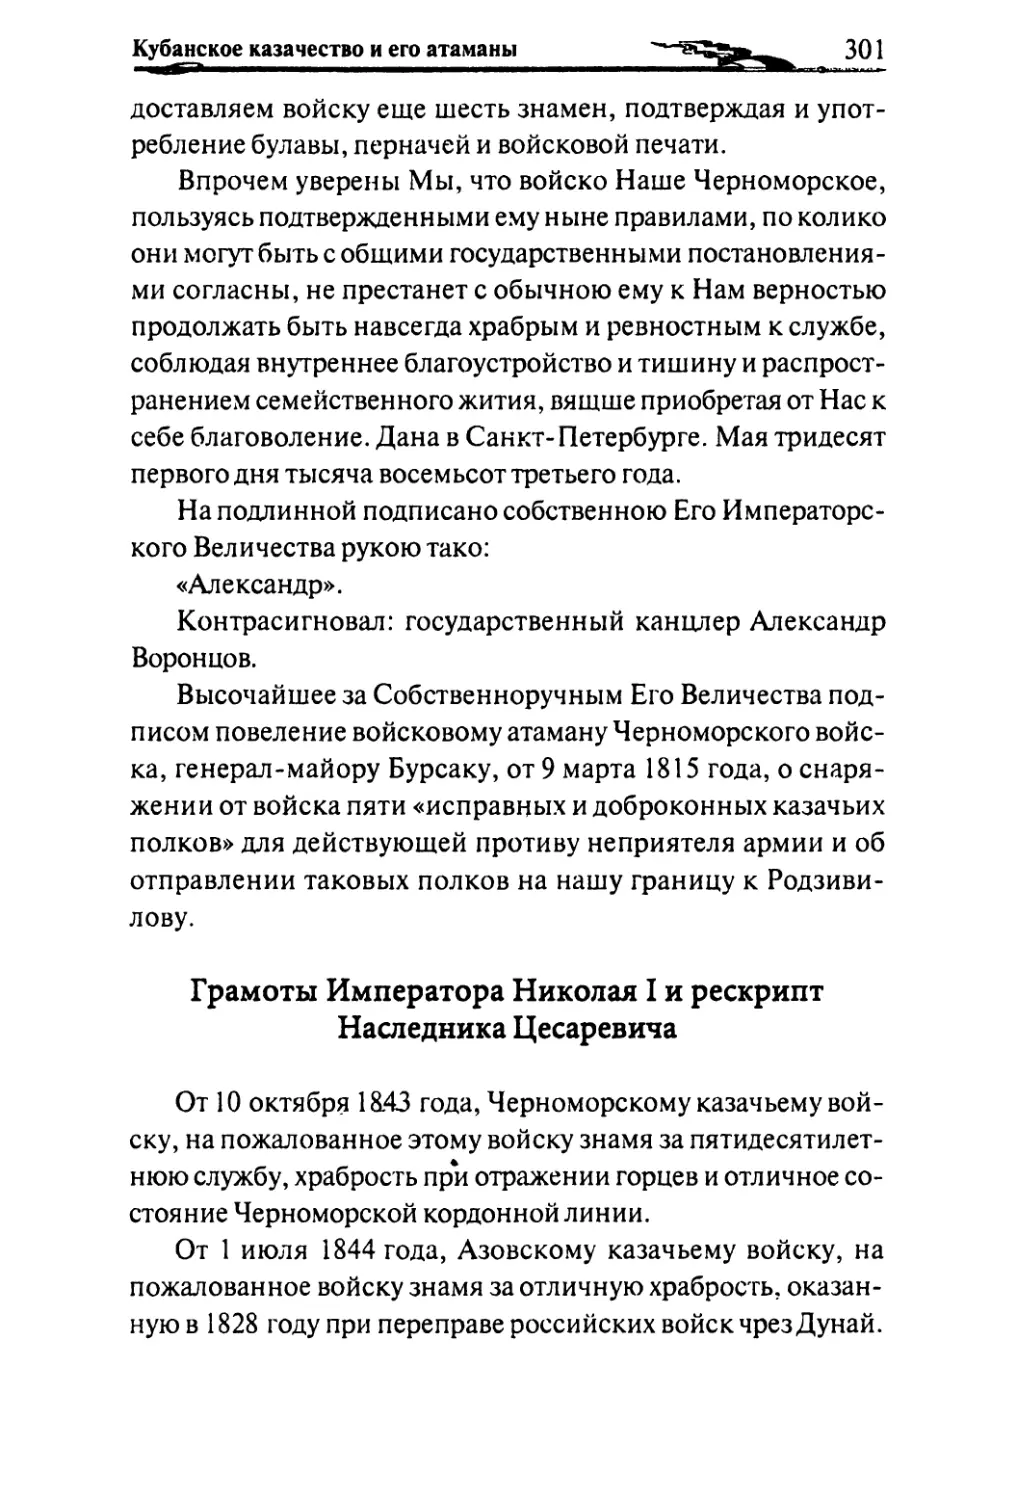 Грамоты Императора Николая I и рескрипт Наследника Цесаревича